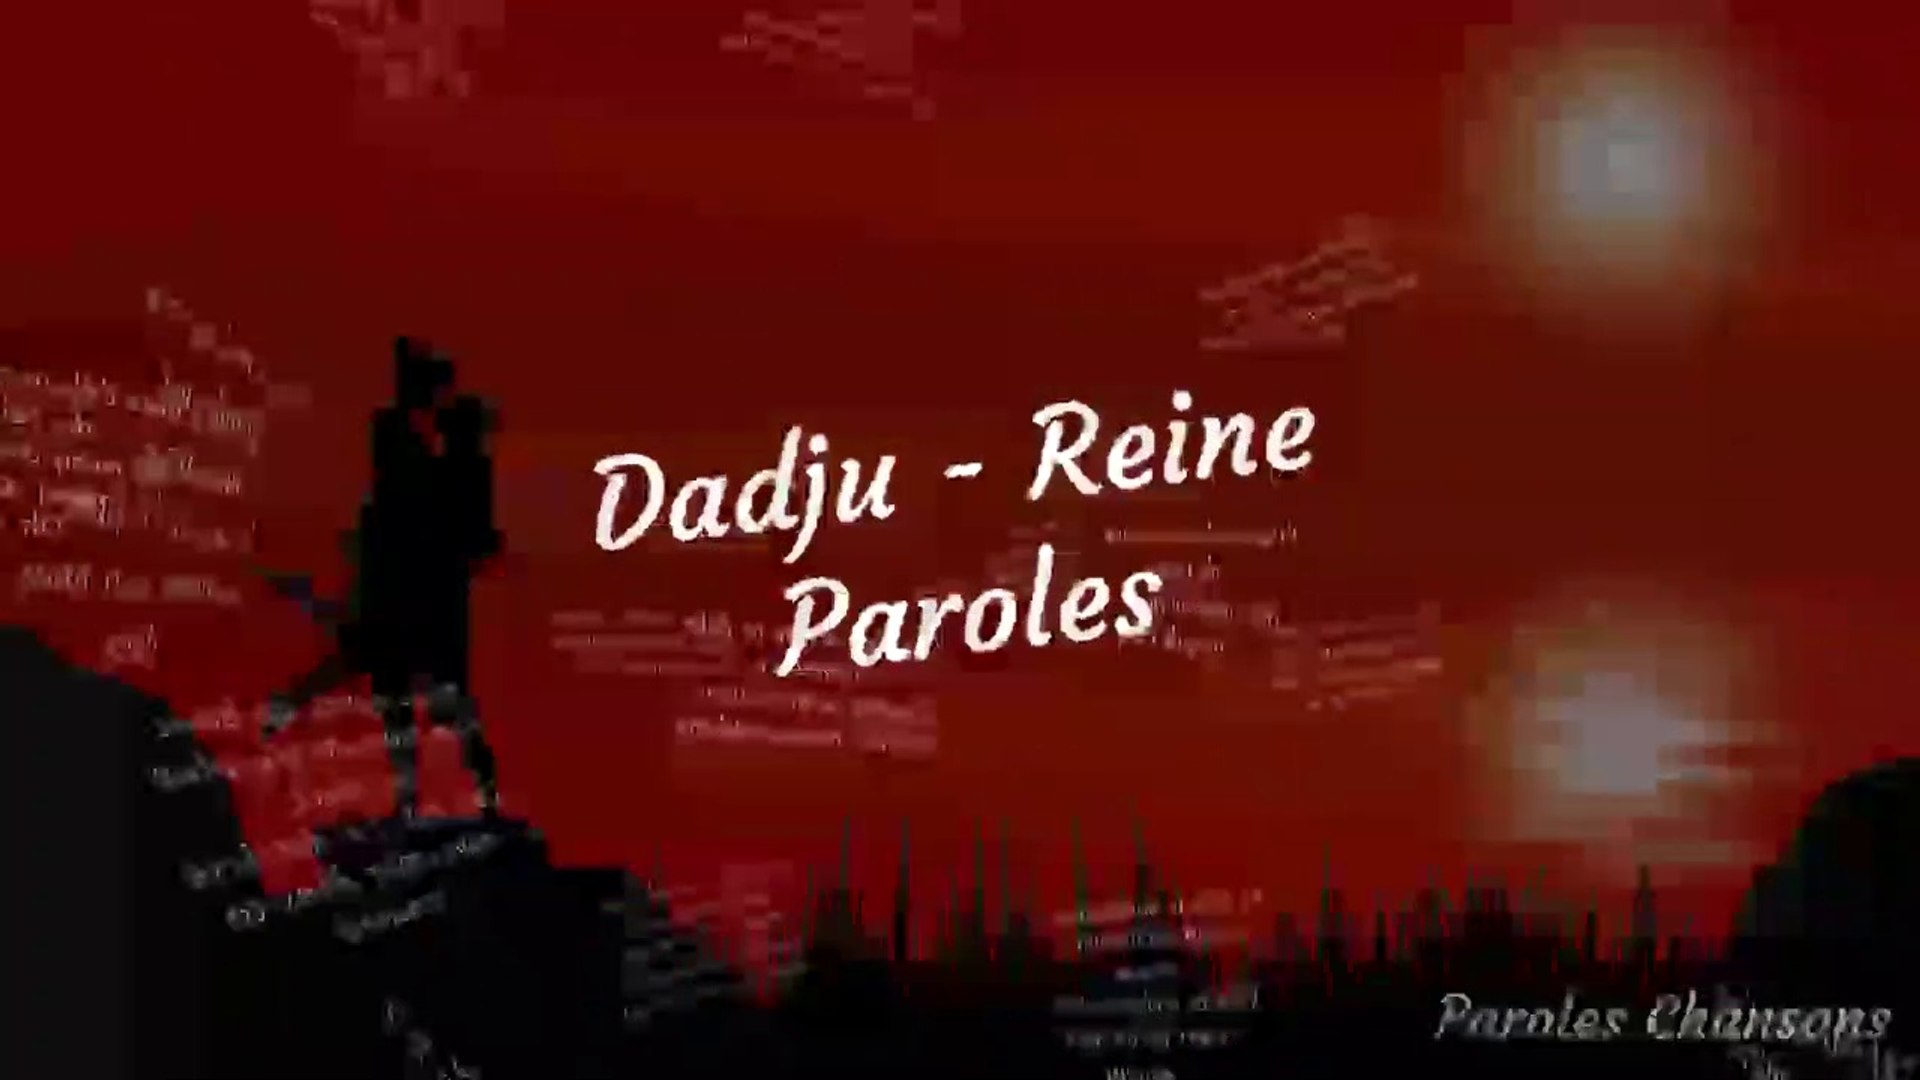 DADJU - Reine (Paroles) - Vidéo Dailymotion